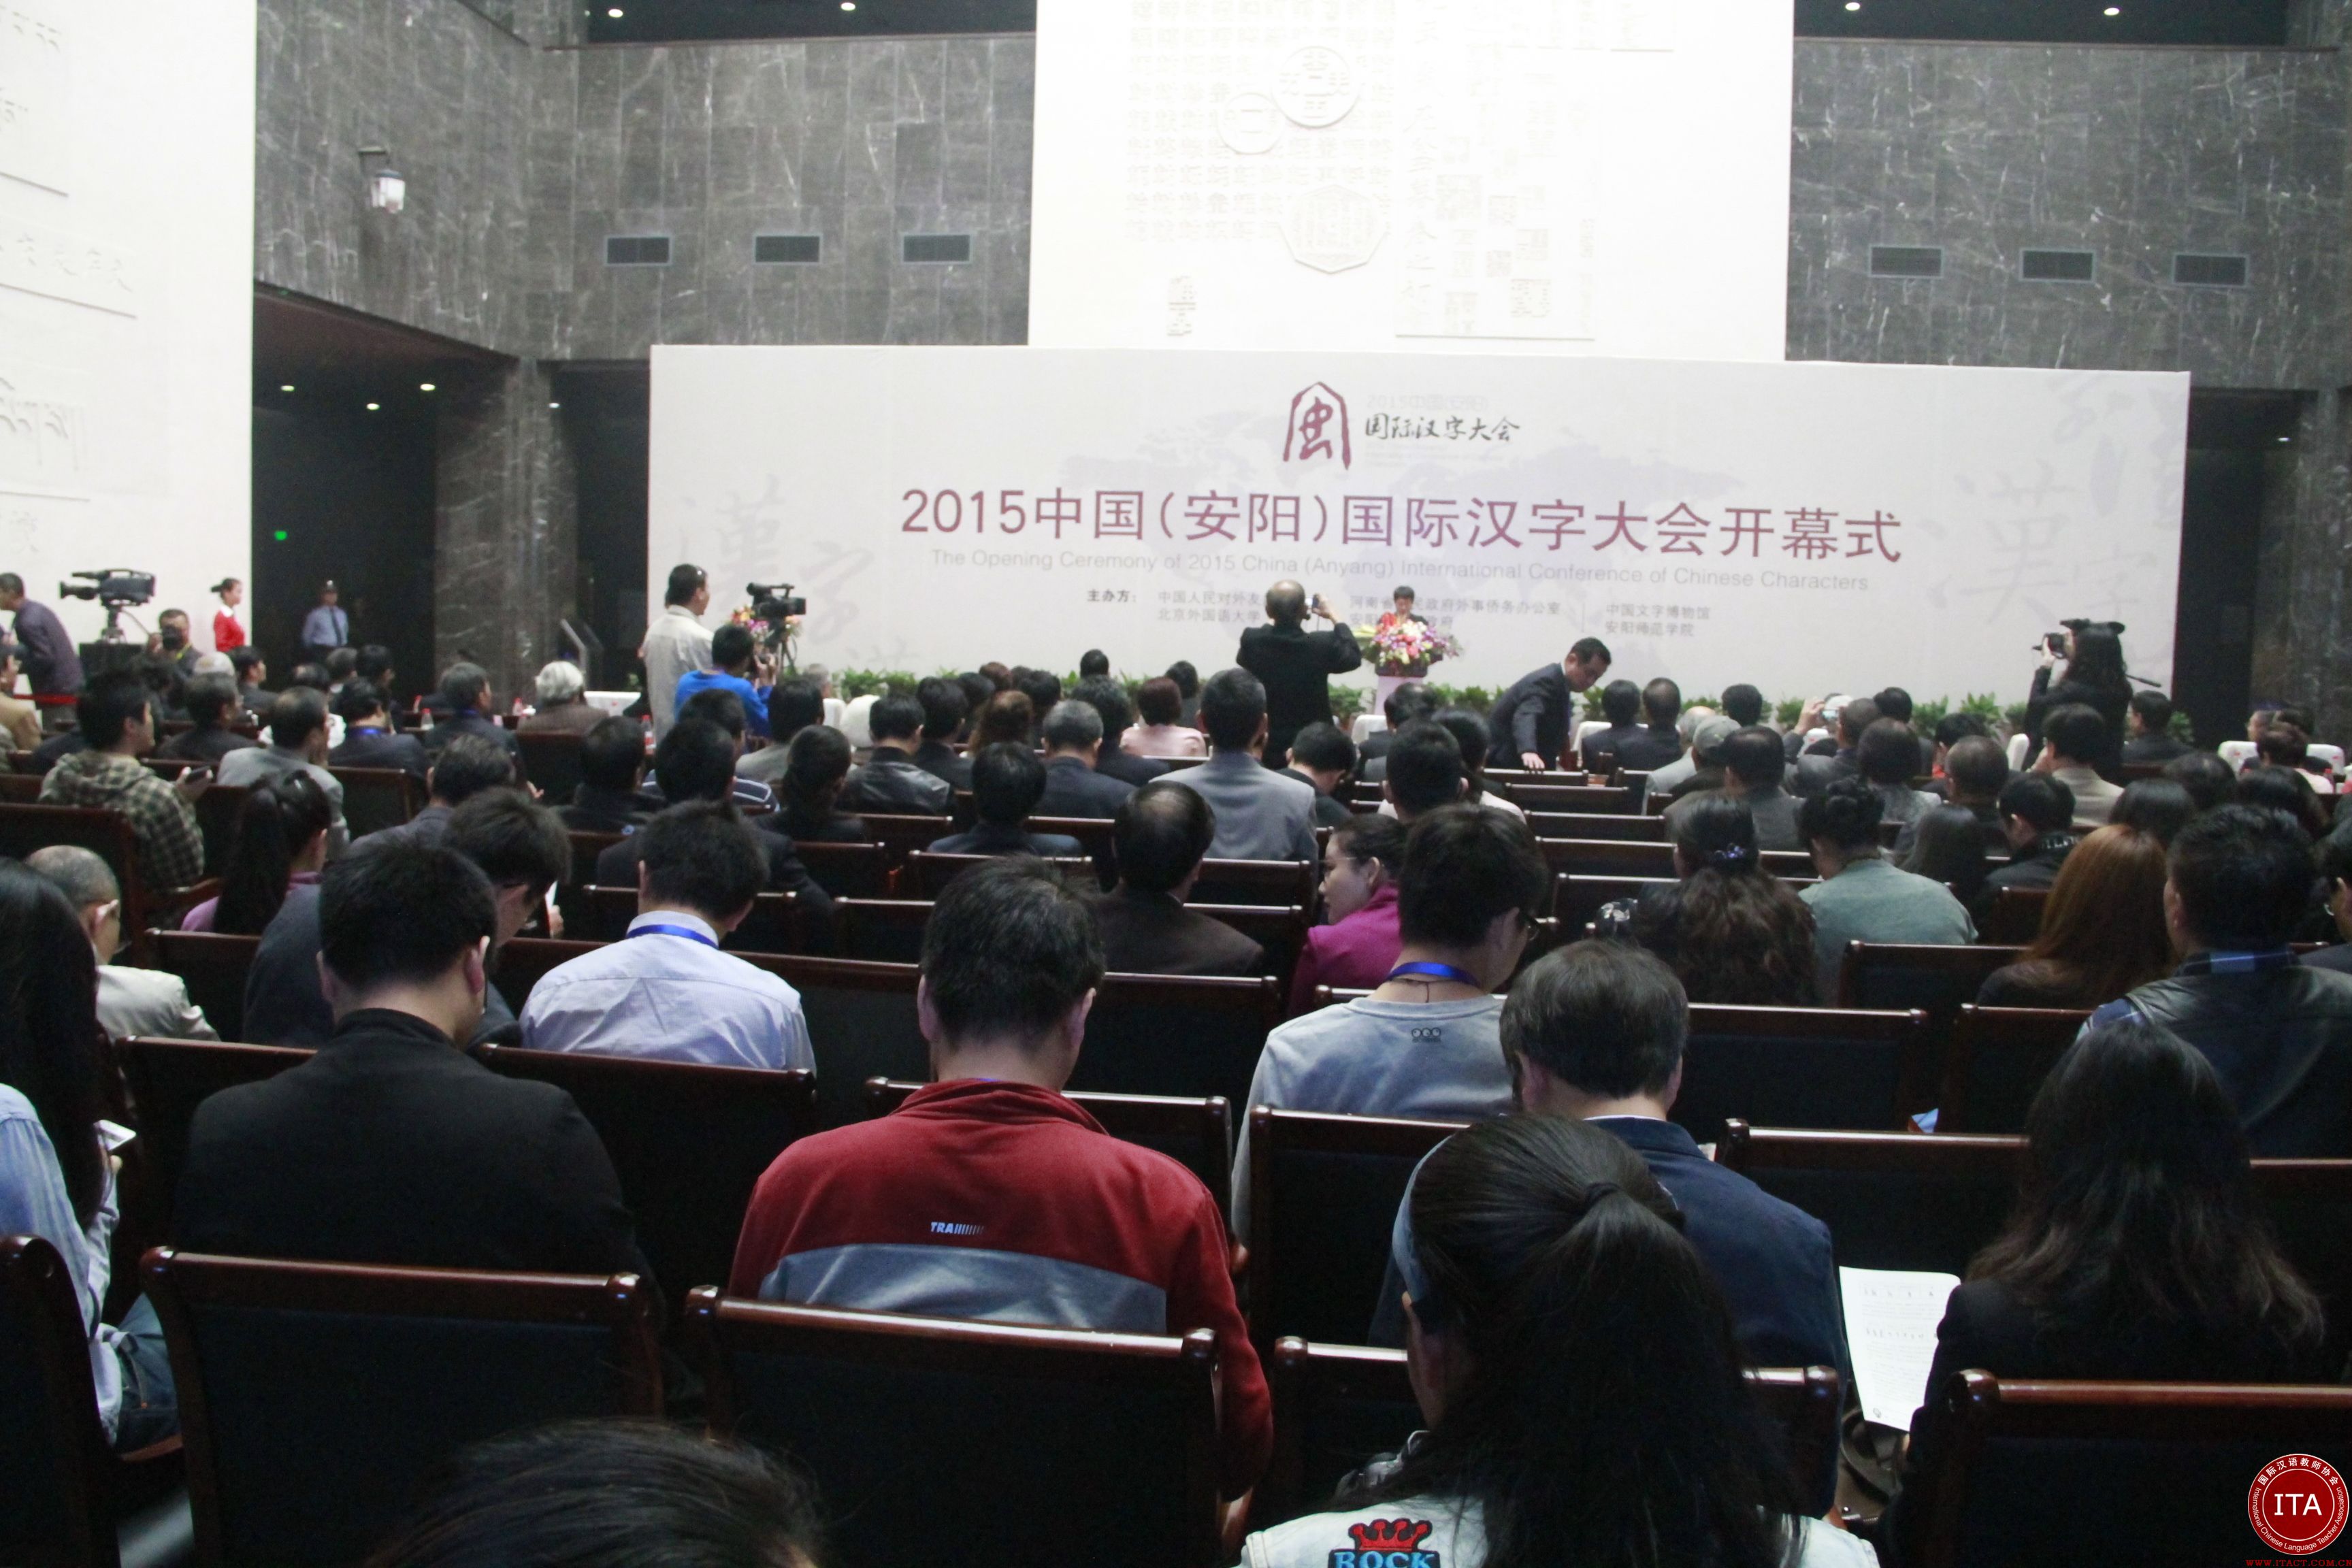 国际汉字大会开幕 世界百位汉字学者河南殷墟寻根